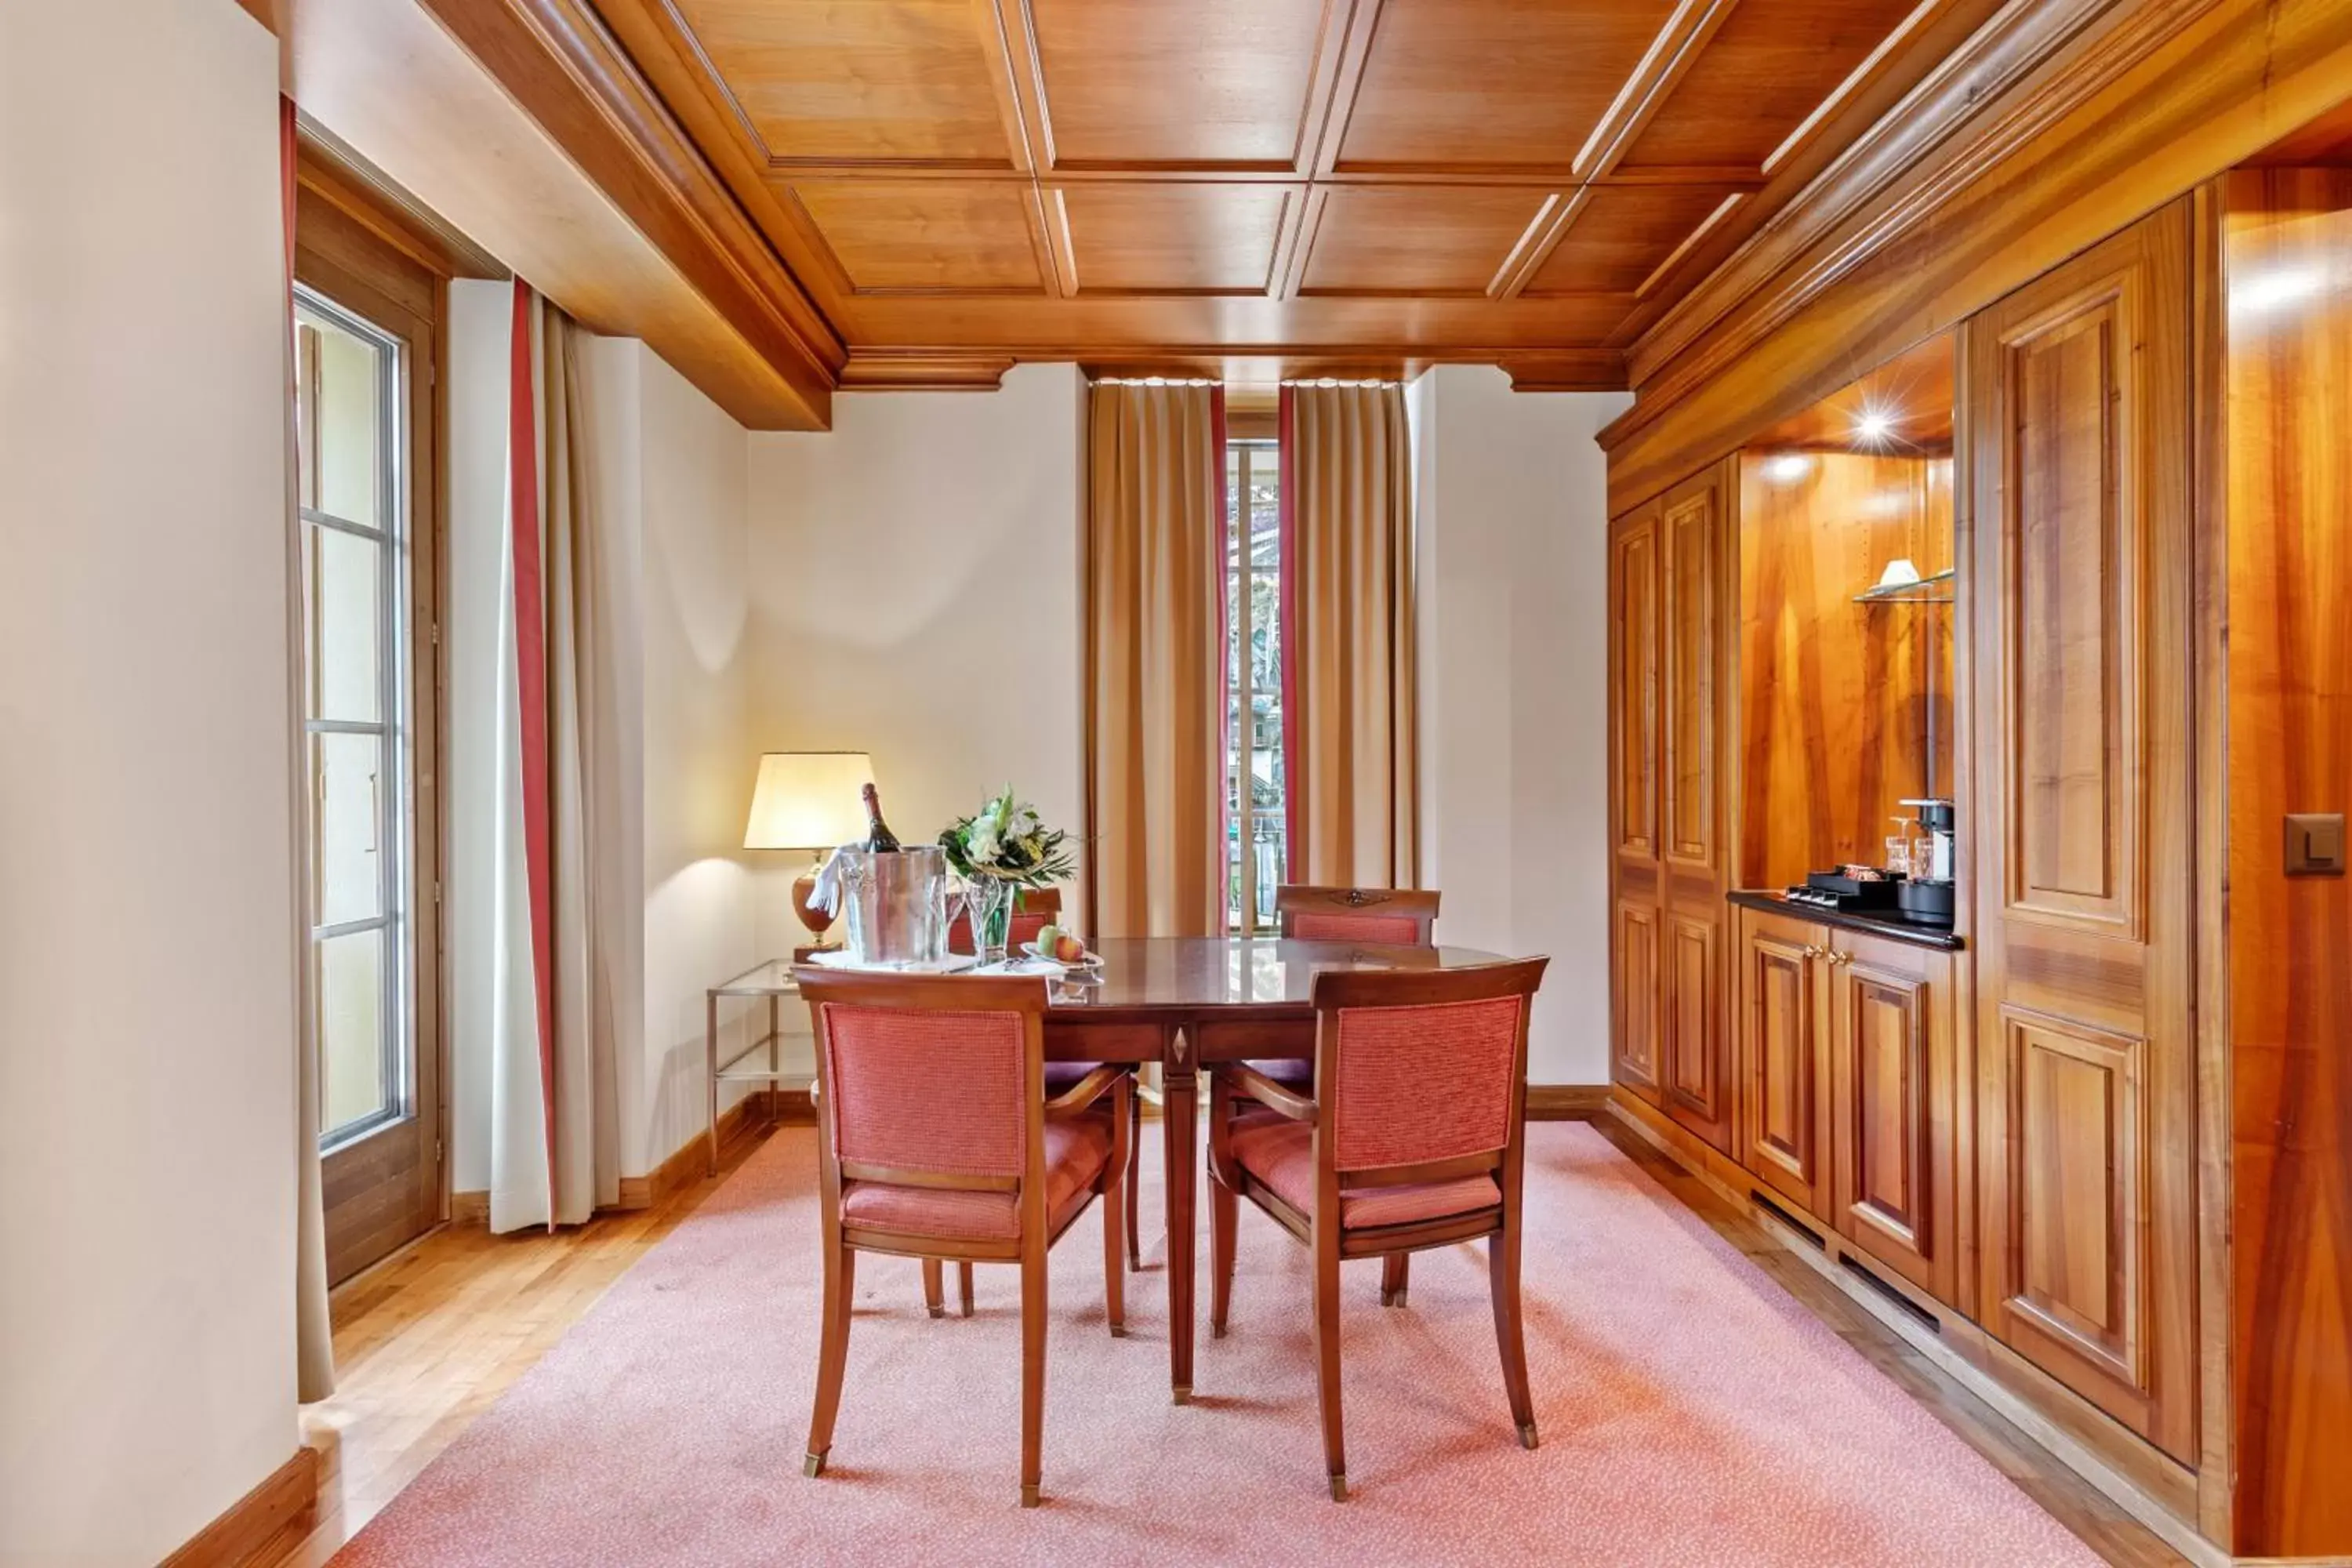 Dining area in Grand Hotel Zermatterhof